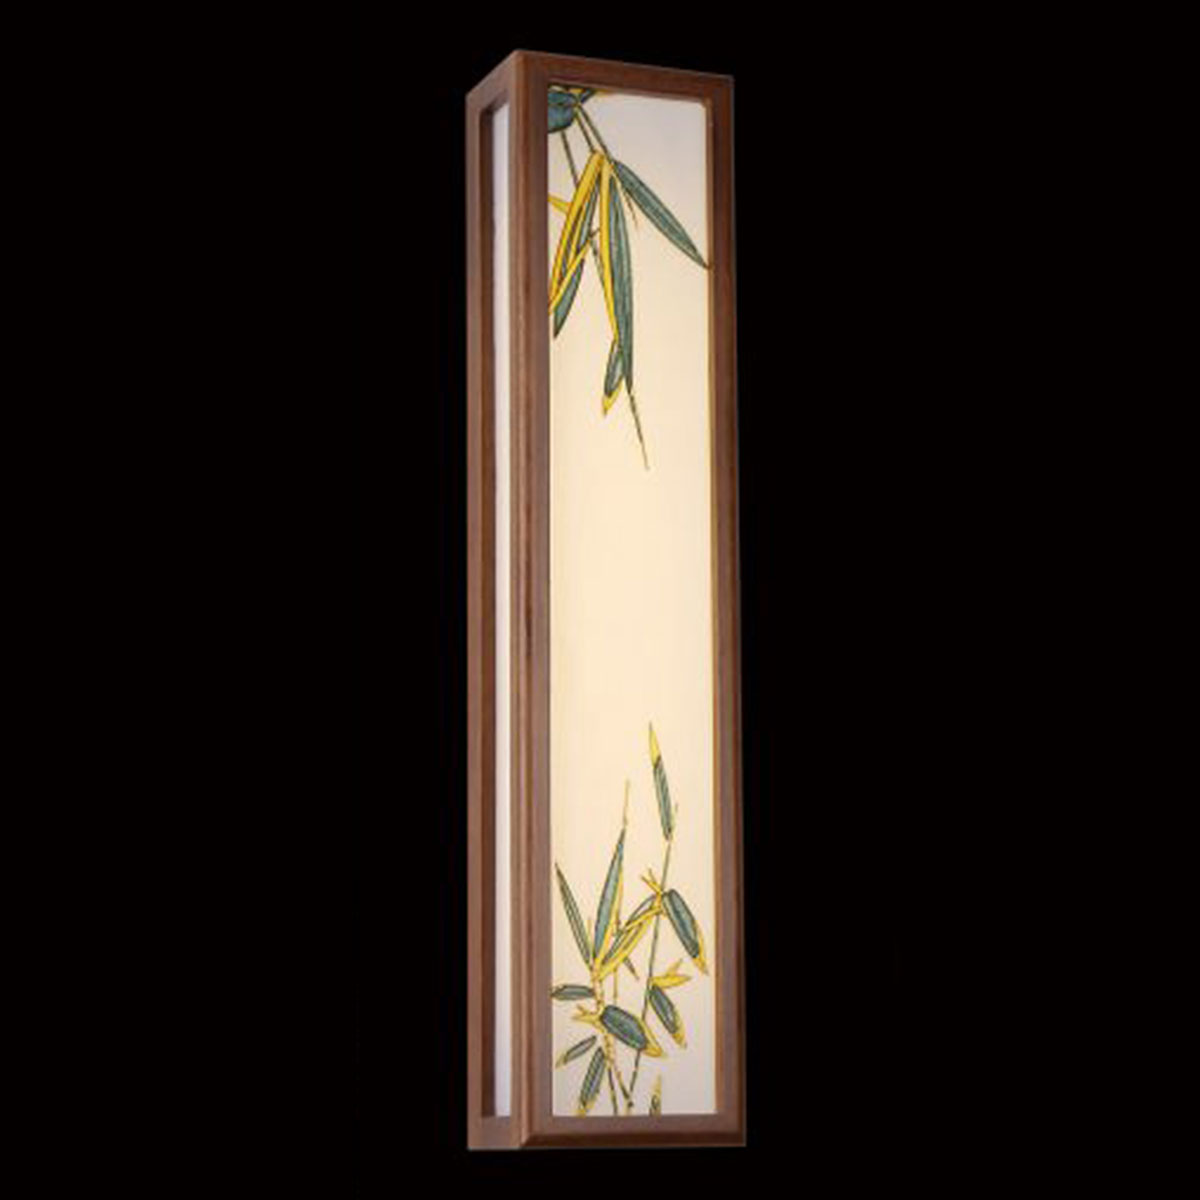 Đèn tường gỗ hình hộp chữ nhật lá trúc 911-1 150x100xH680